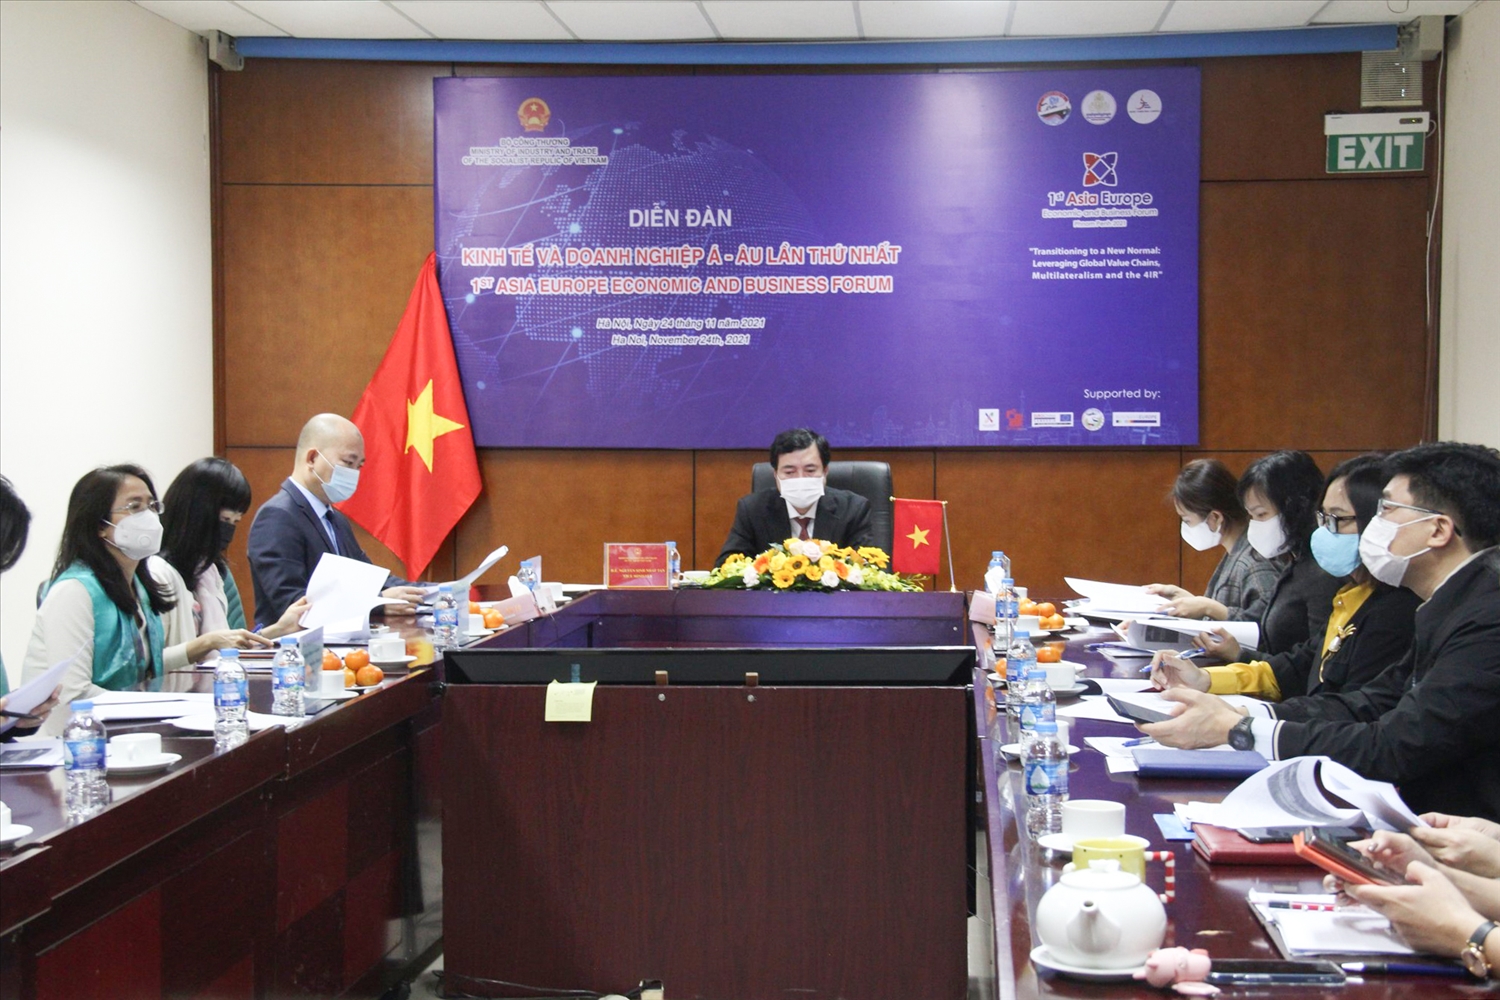 Đoàn Việt Nam tham dự Diễn đàn AEEBF1 lần này bằng hình thức trực tuyến